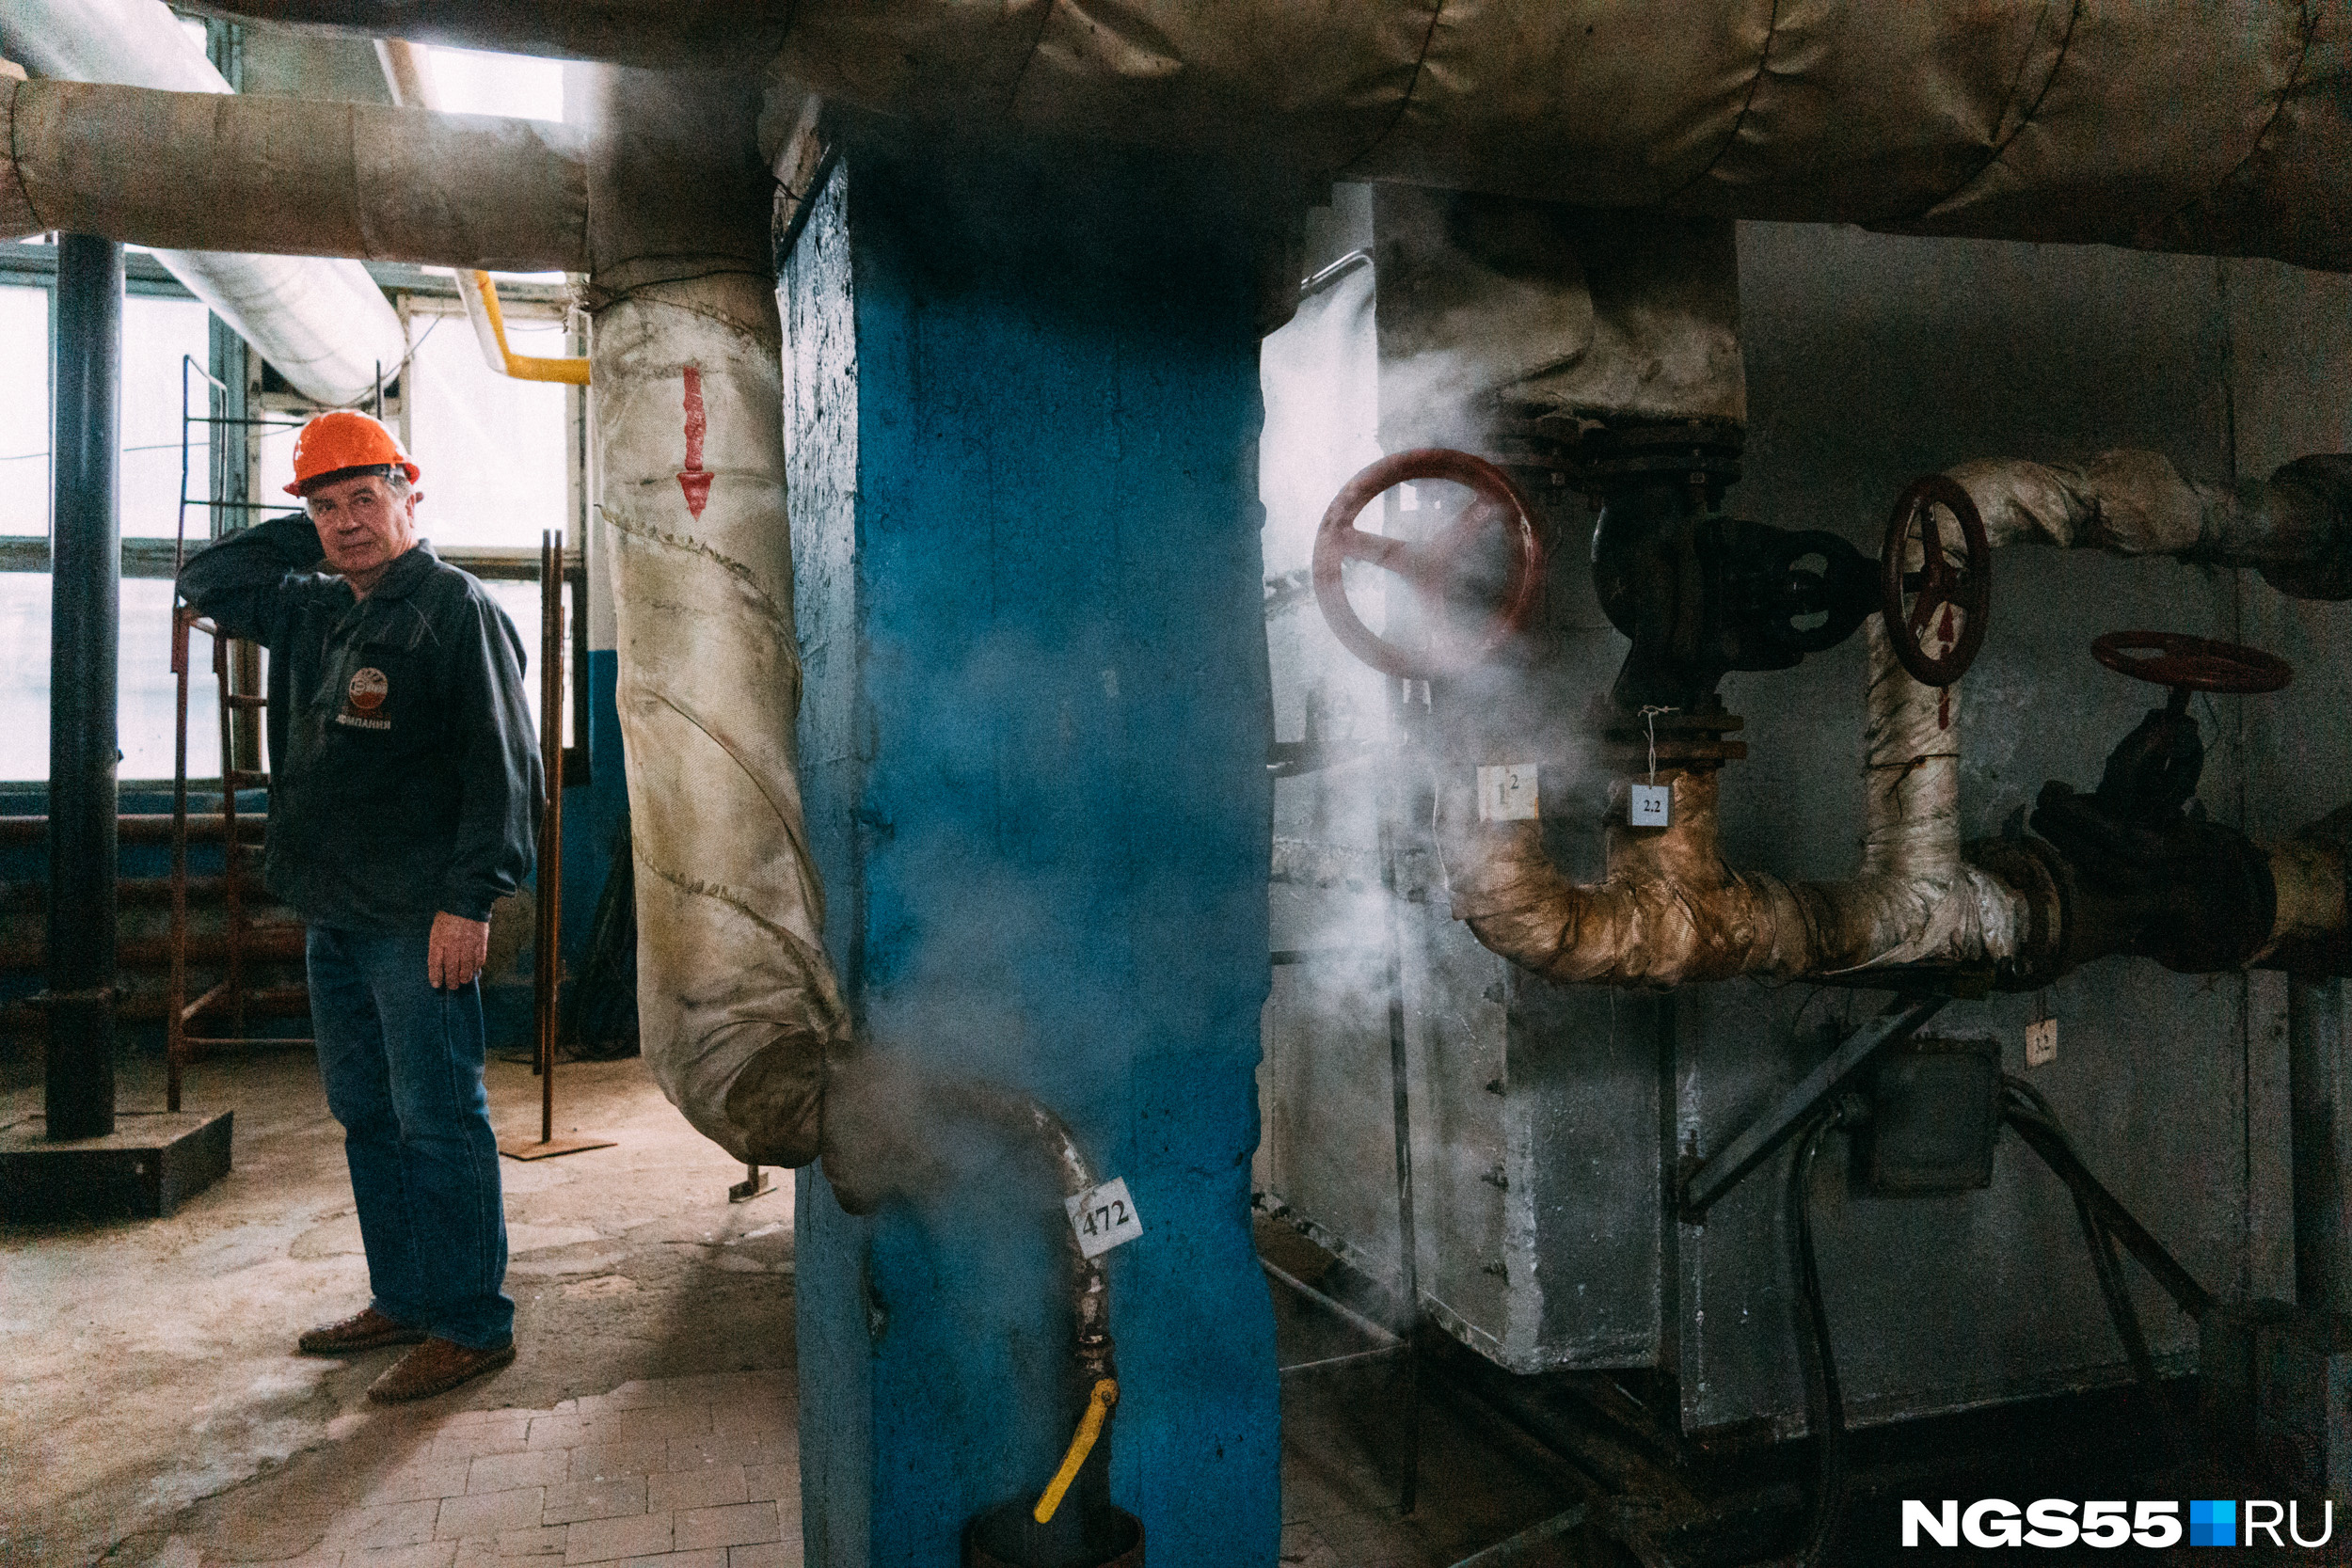 Жители Борзи в Забайкалье мерзнут в своих квартирах в Новый год